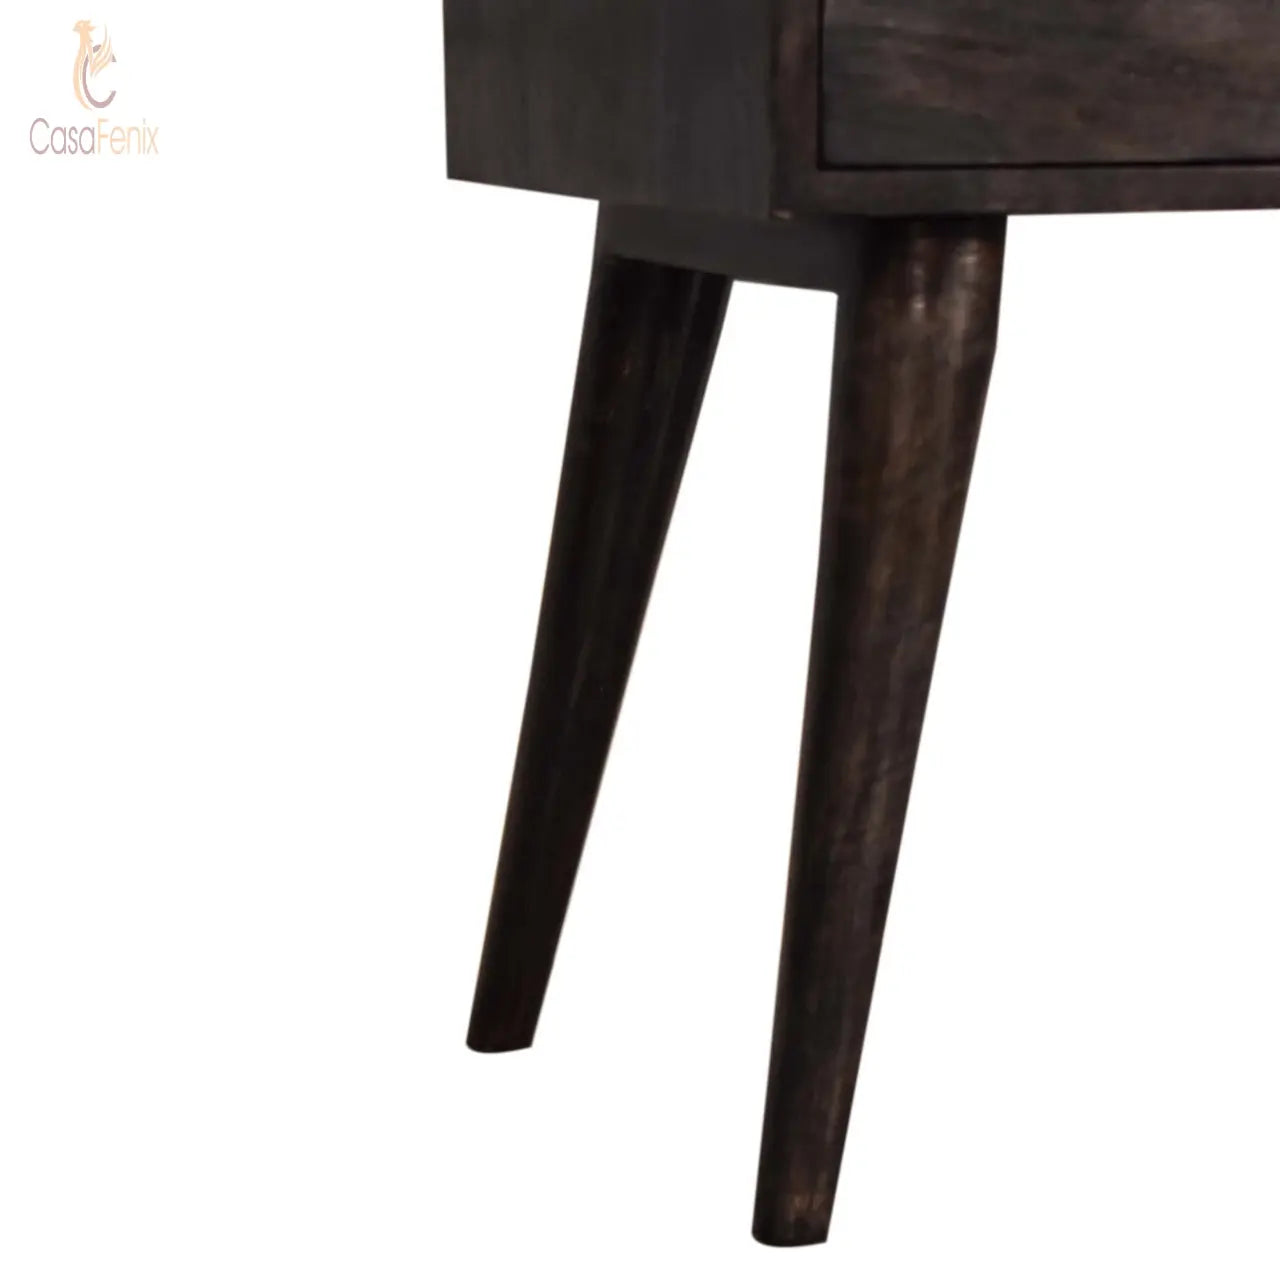 Ash Black Modern Solid Mango Wood 2 Drawer Bedside Chest Nordic Design - CasaFenix